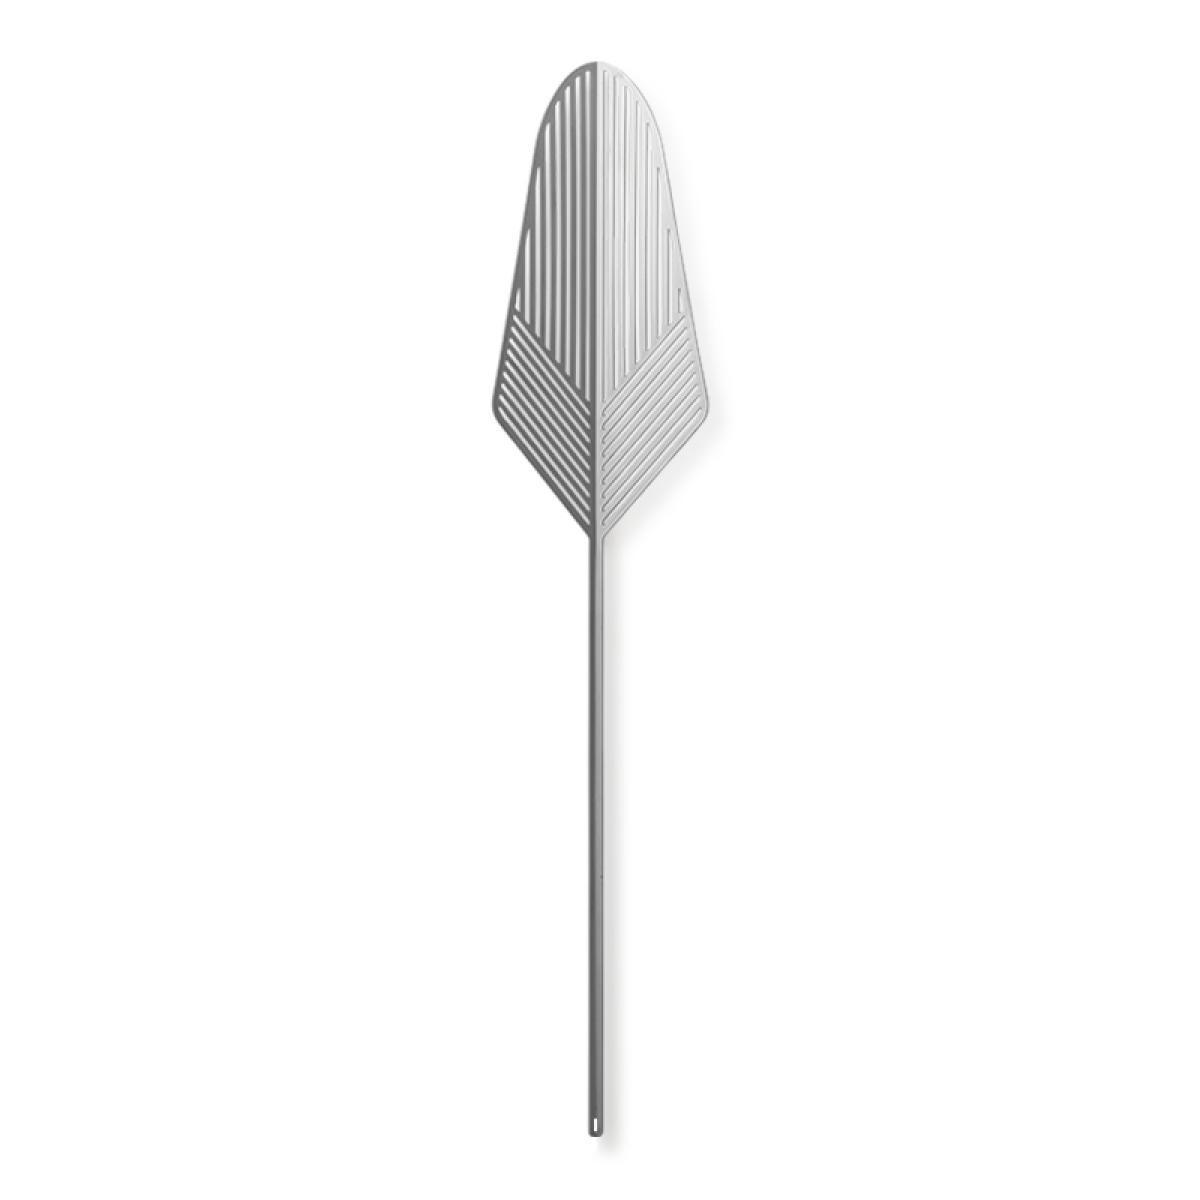 Lucie Kaas Leafike Nova Metal Blade Chrome, 41,5 cm